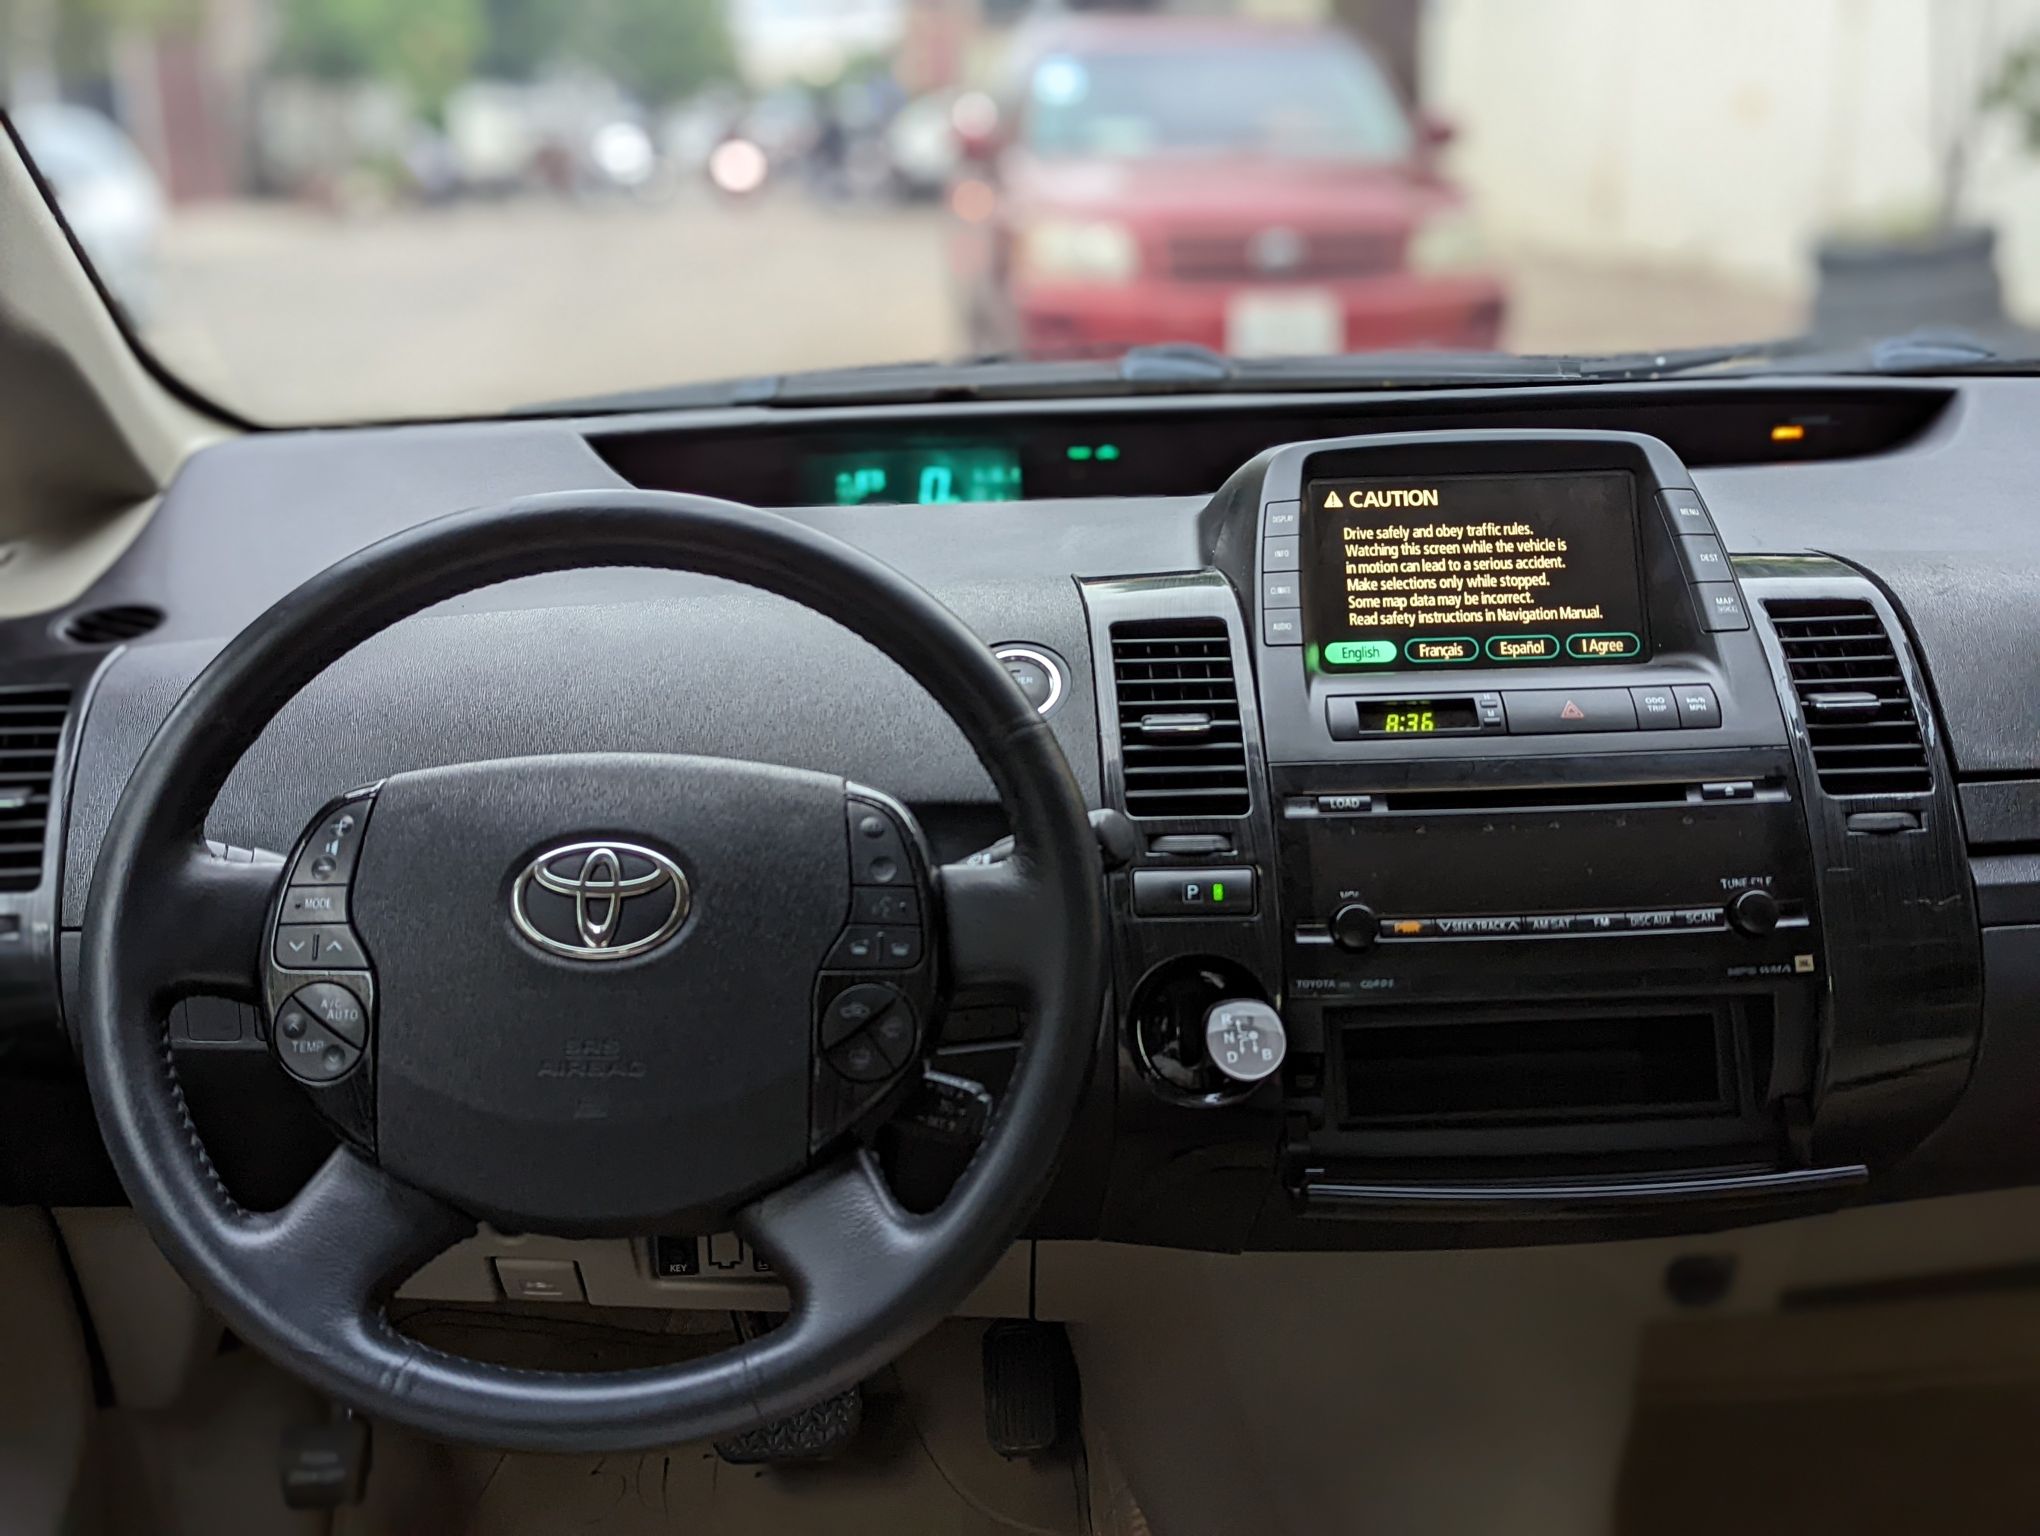 Toyota Prius 2007 full option